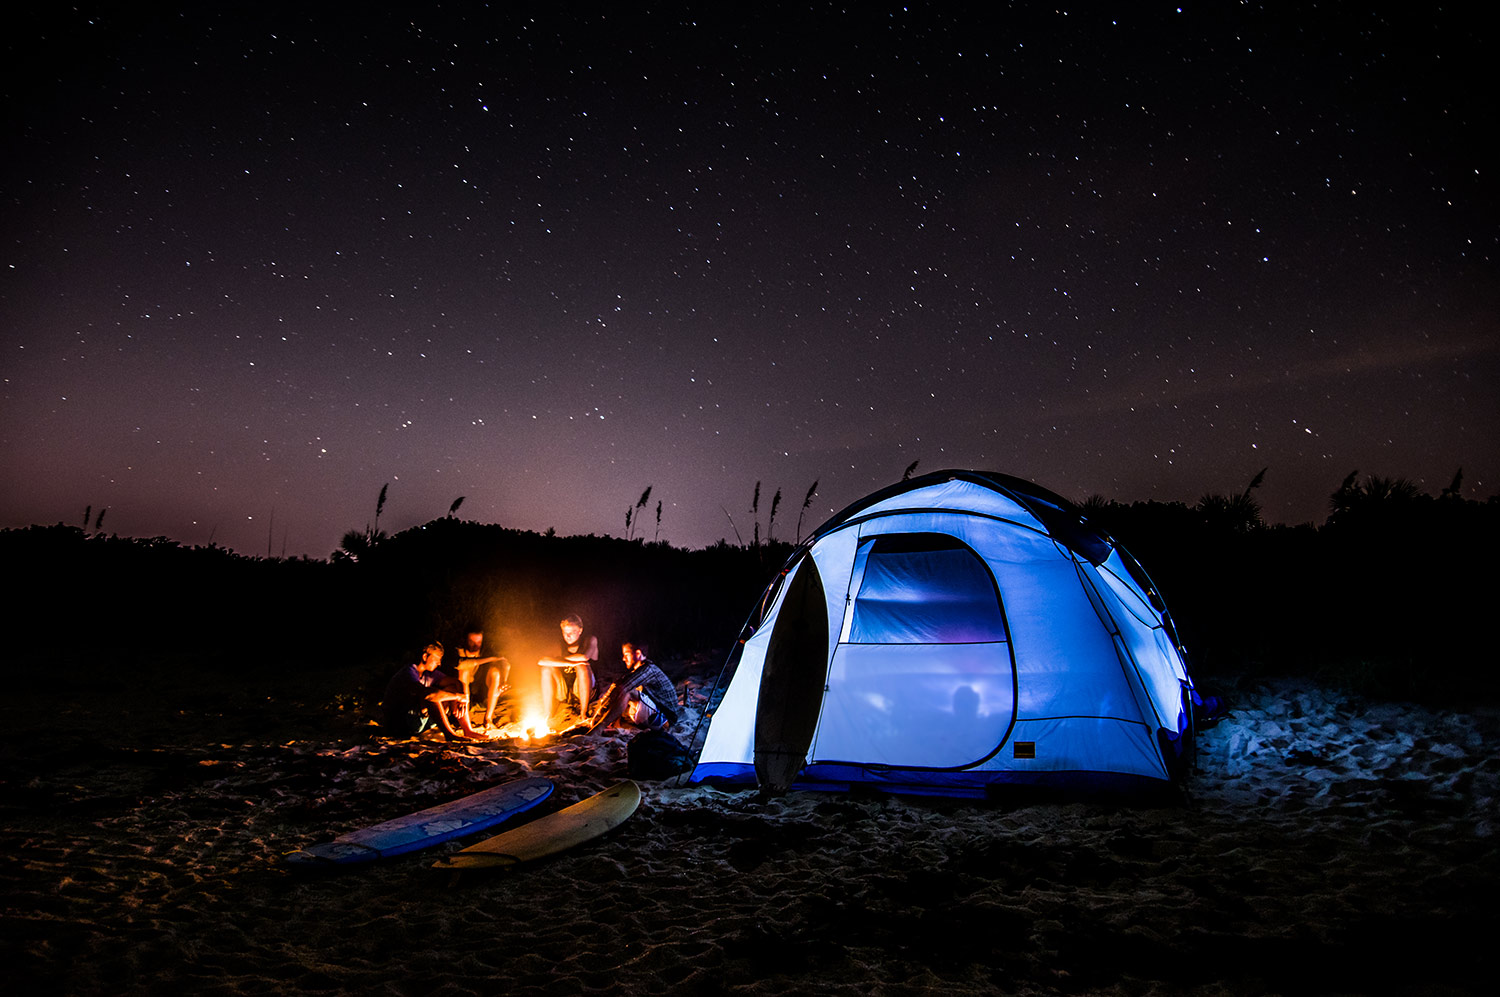 kinh nghiệm cắm trại qua đêm